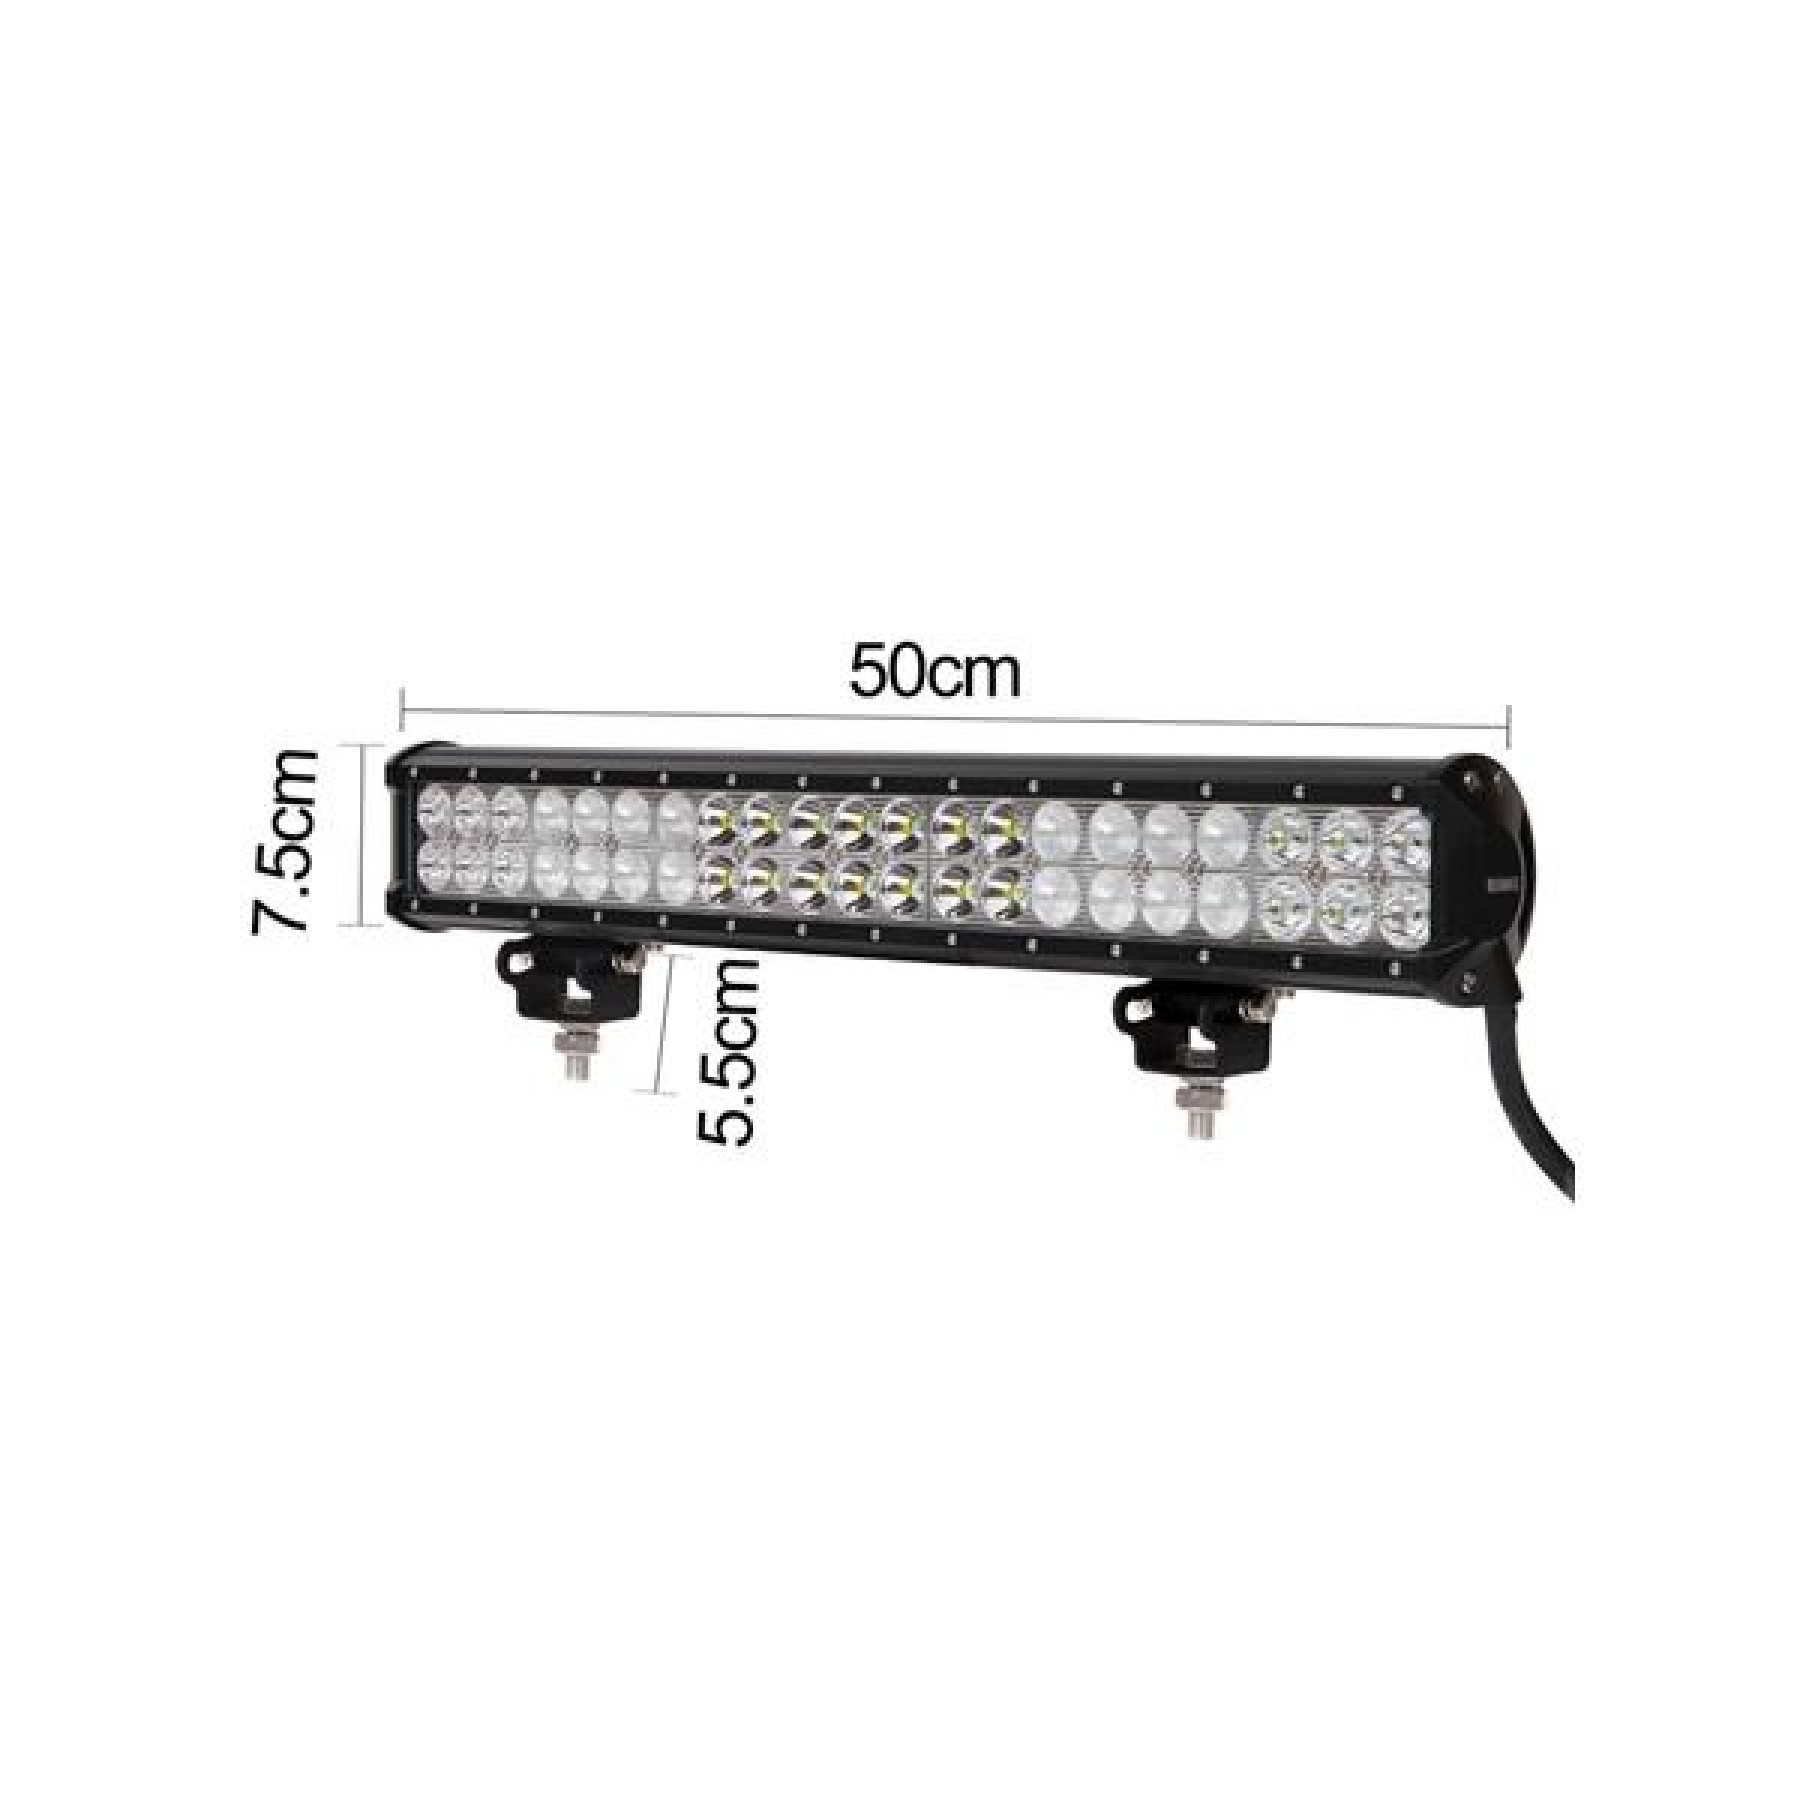 LED light bar 42 leds 126w triple combo beam